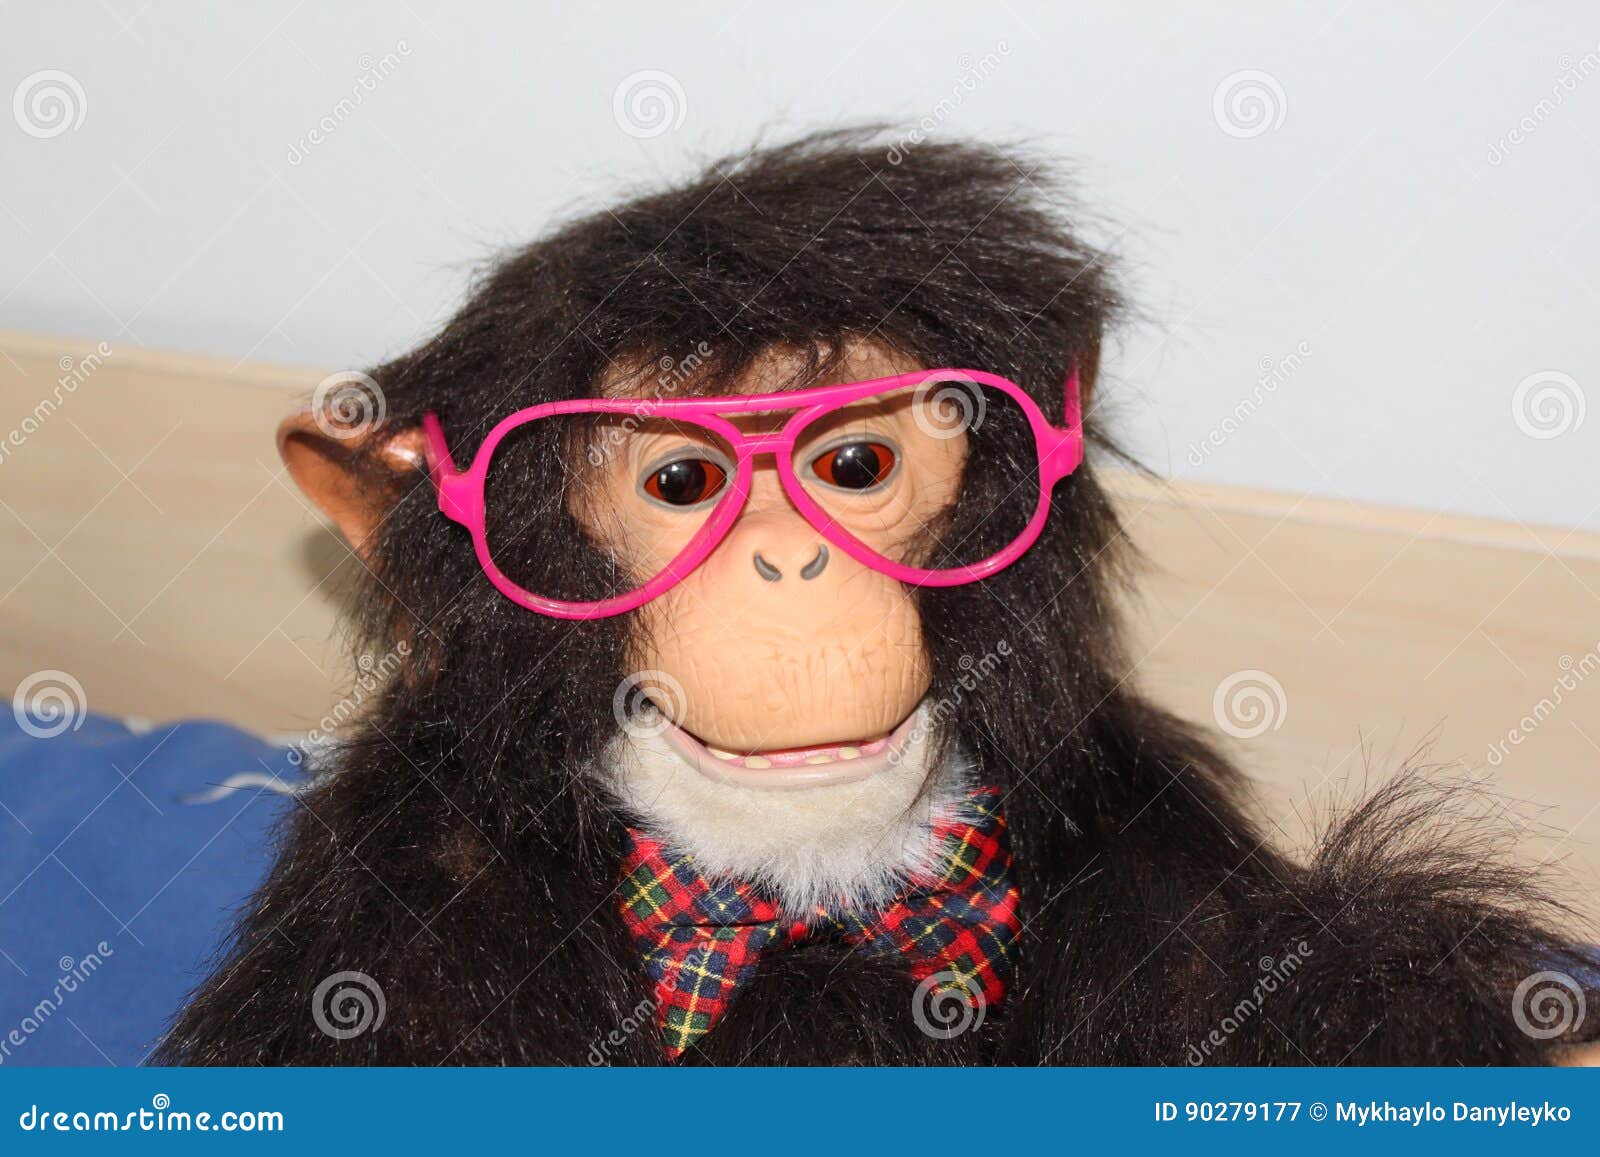 Funny monkey stock image. Image of desktop, monkey, funny - 90279177